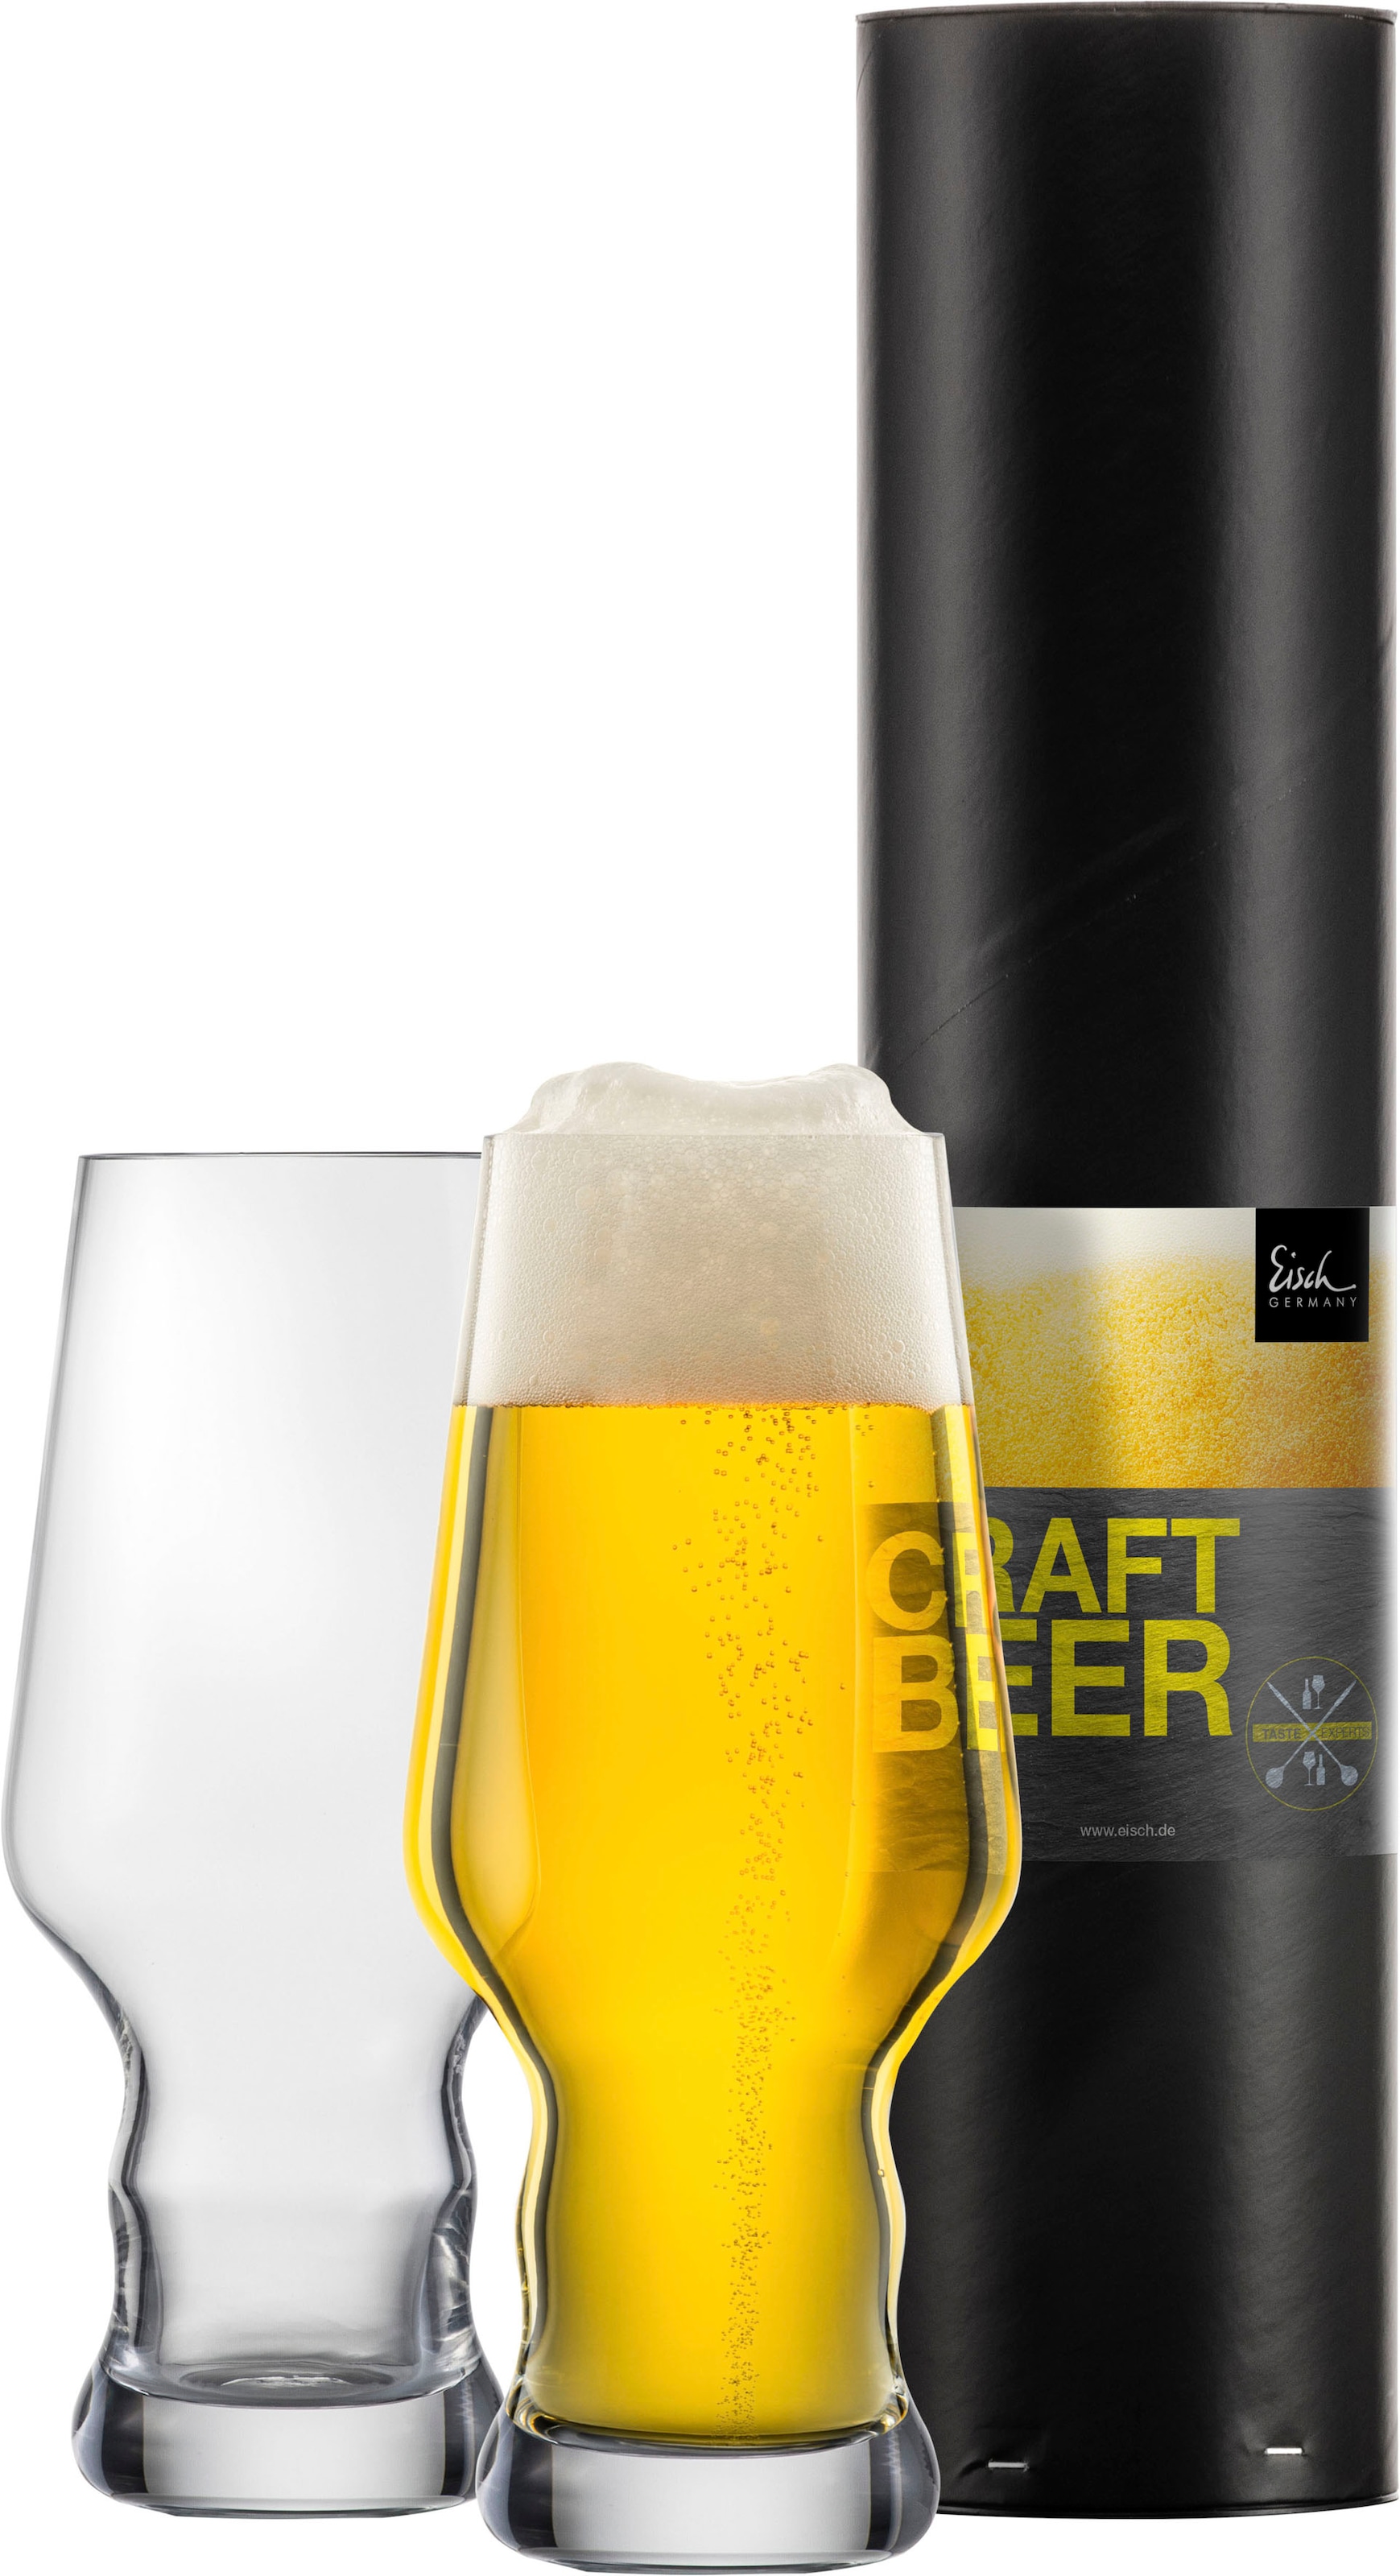 Eisch Bierglas "CRAFT BEER EXPERTS", (Set, 2 tlg., 2 Craft Beer Becher in Geschenkröhre), 2-teilig, 450 ml